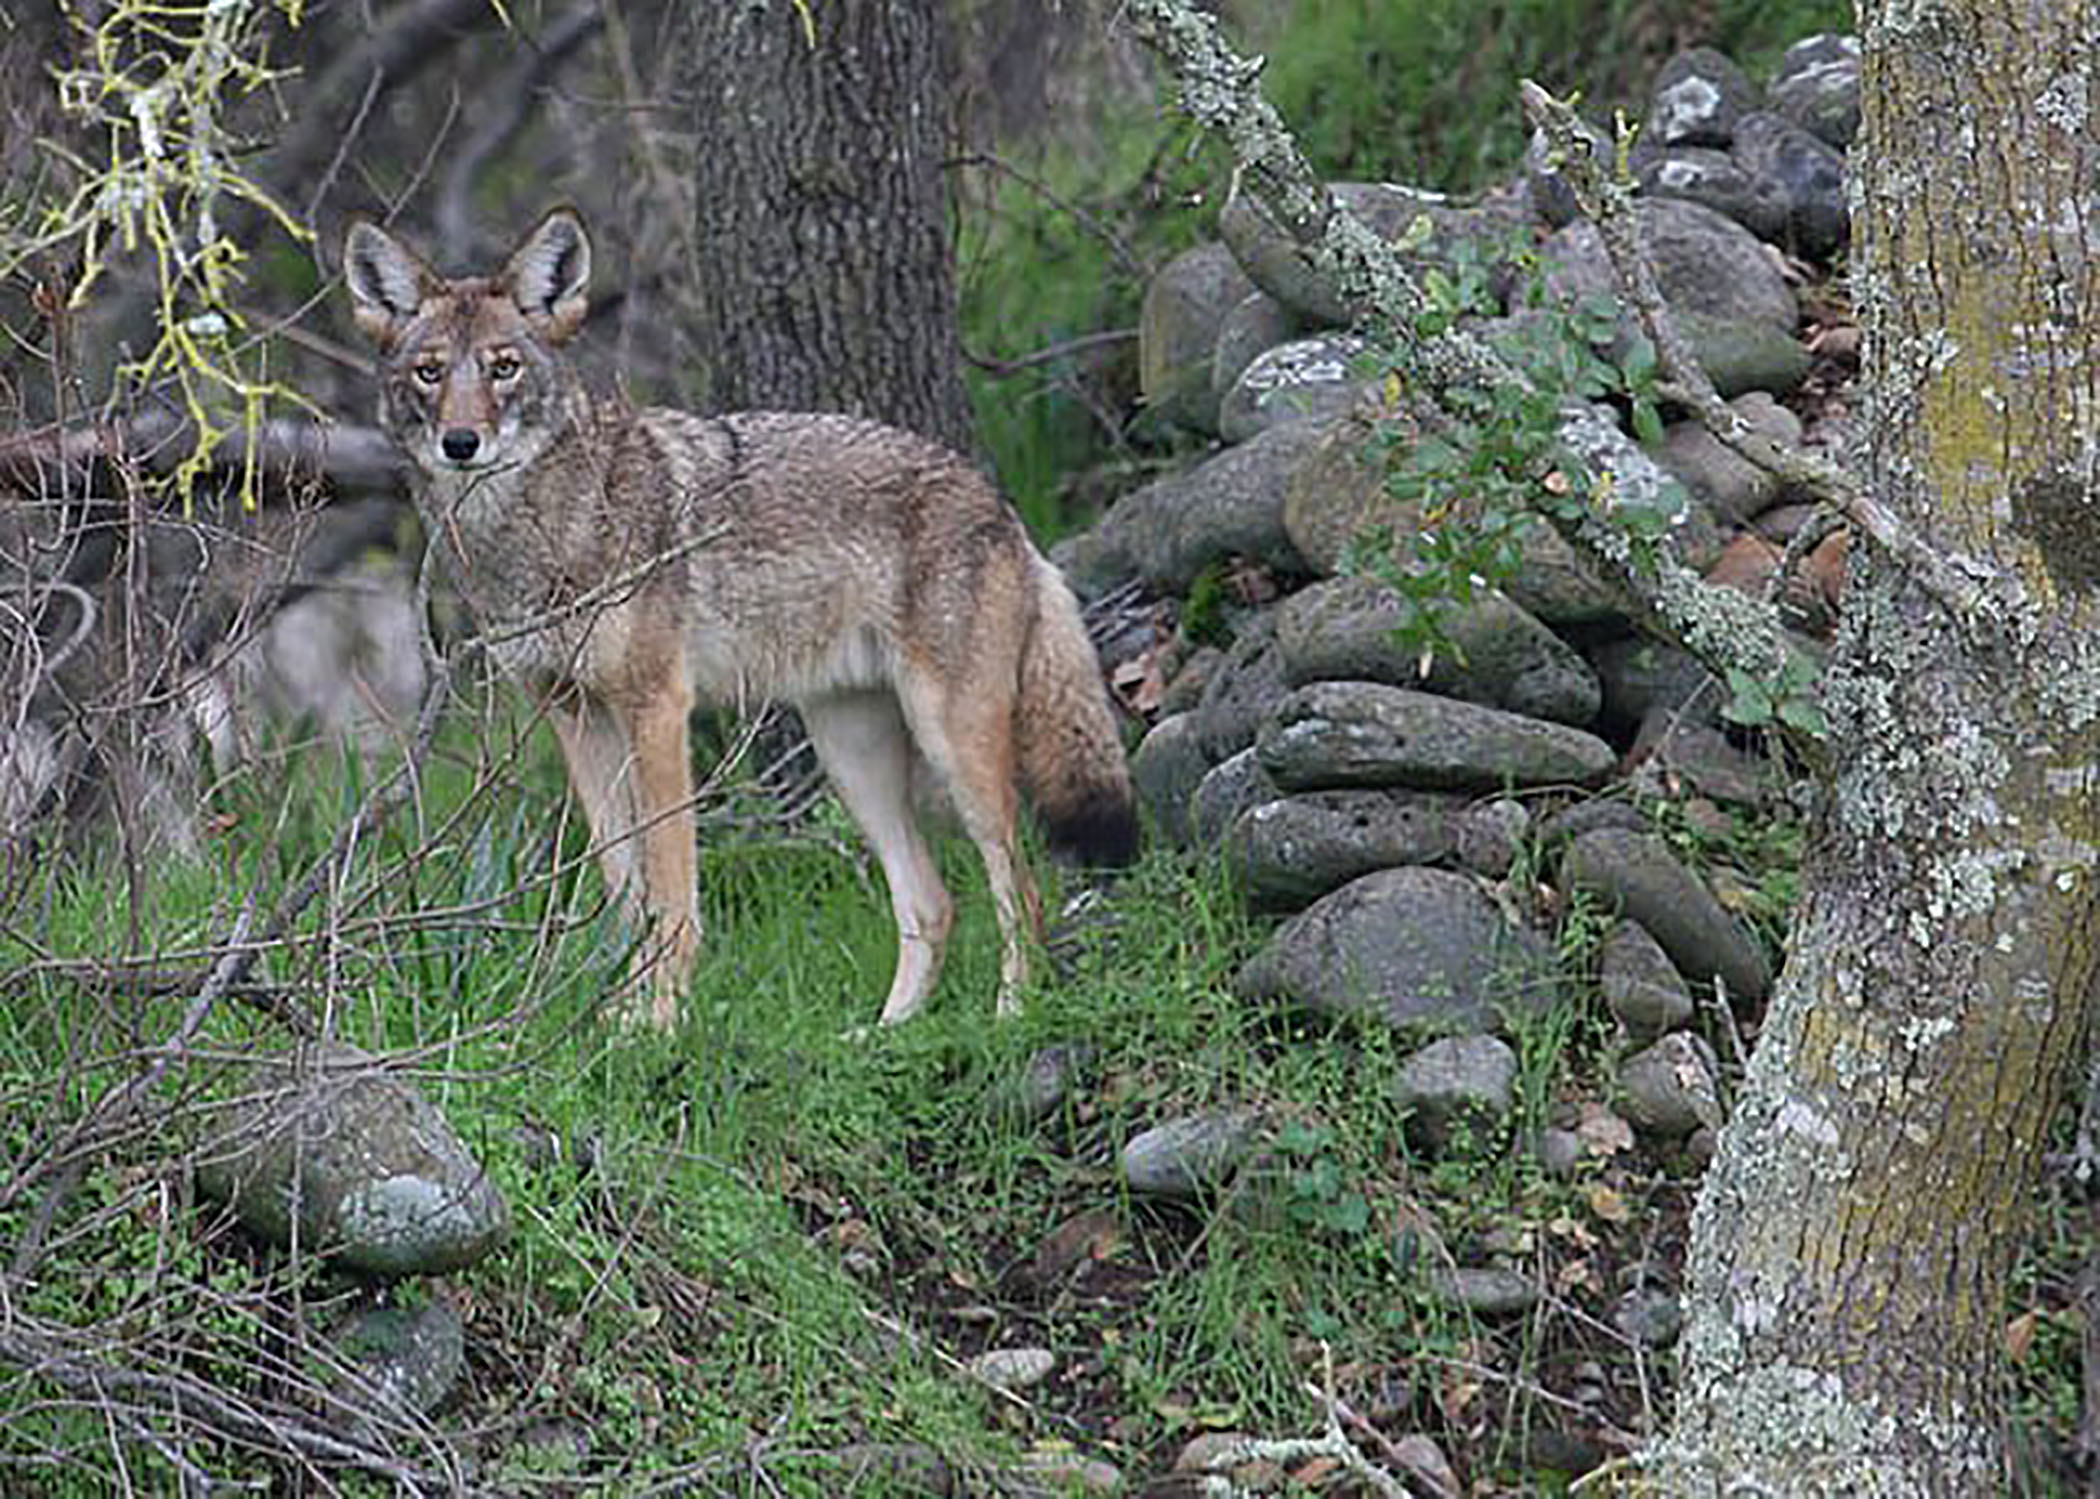 North Wildwood police warn of coyote sightings